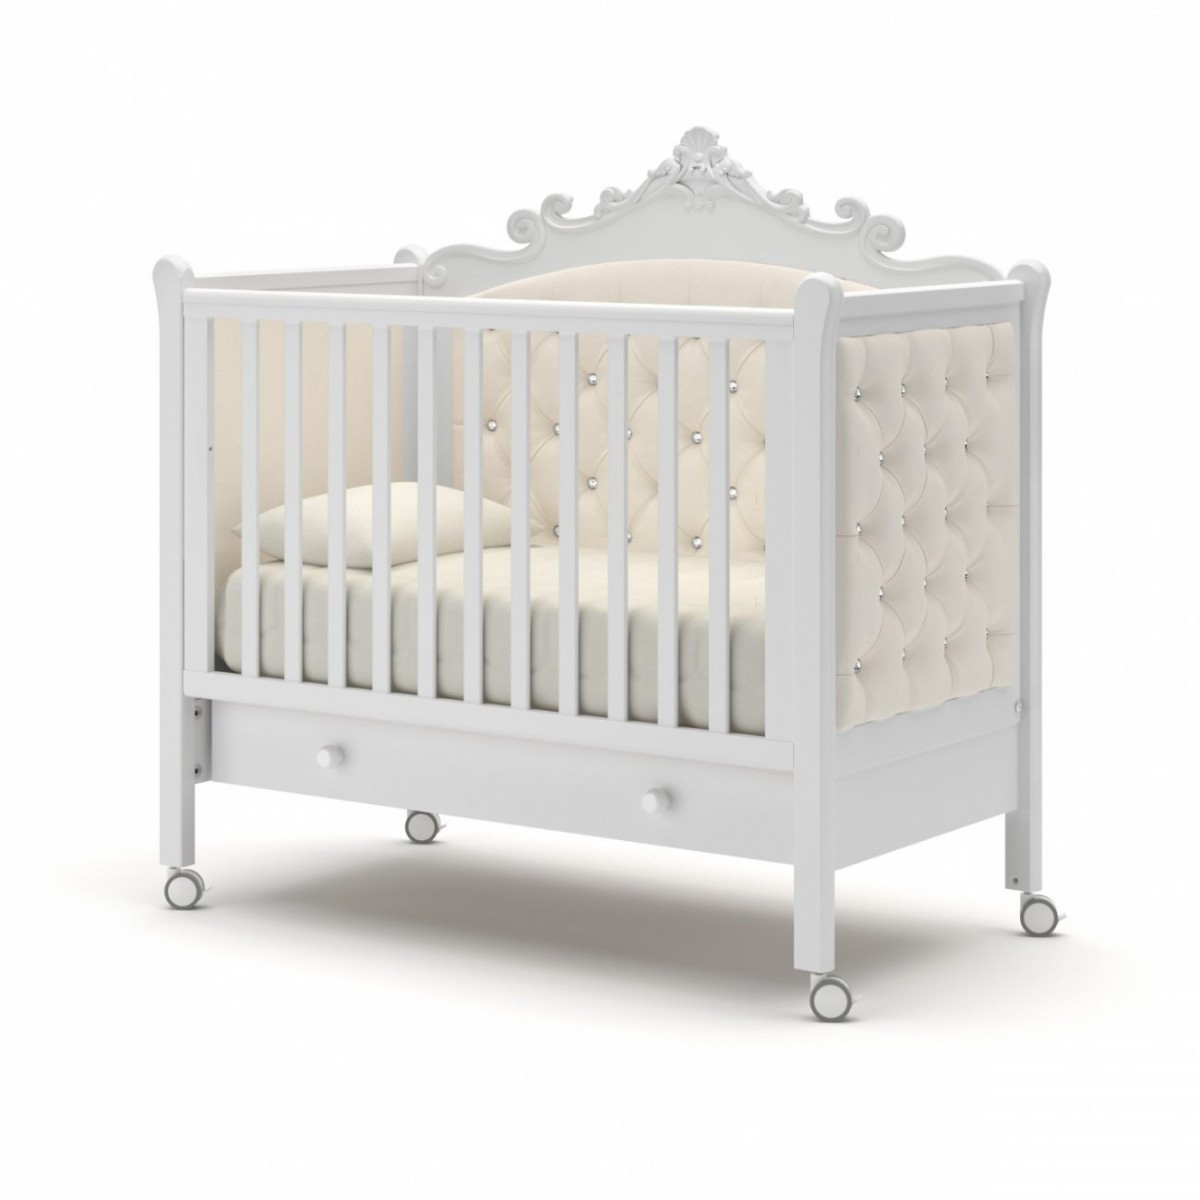 Конструктивные особенности и дизайн кроваток на колесах в Babycribs